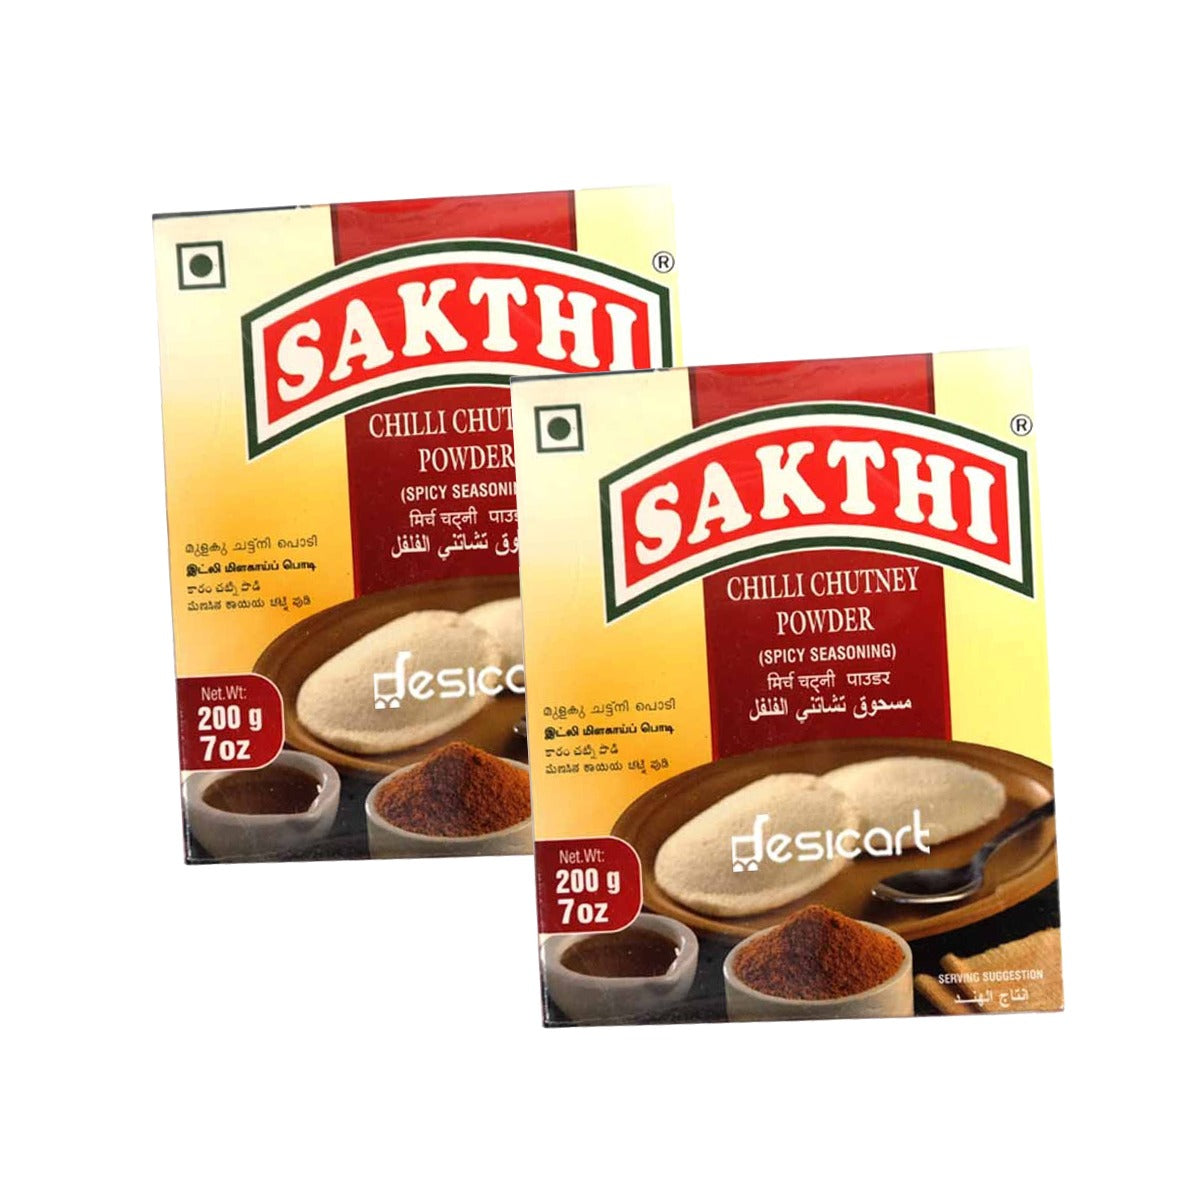 Sakthi Chilli Chutney Powder 200g Pack of 2